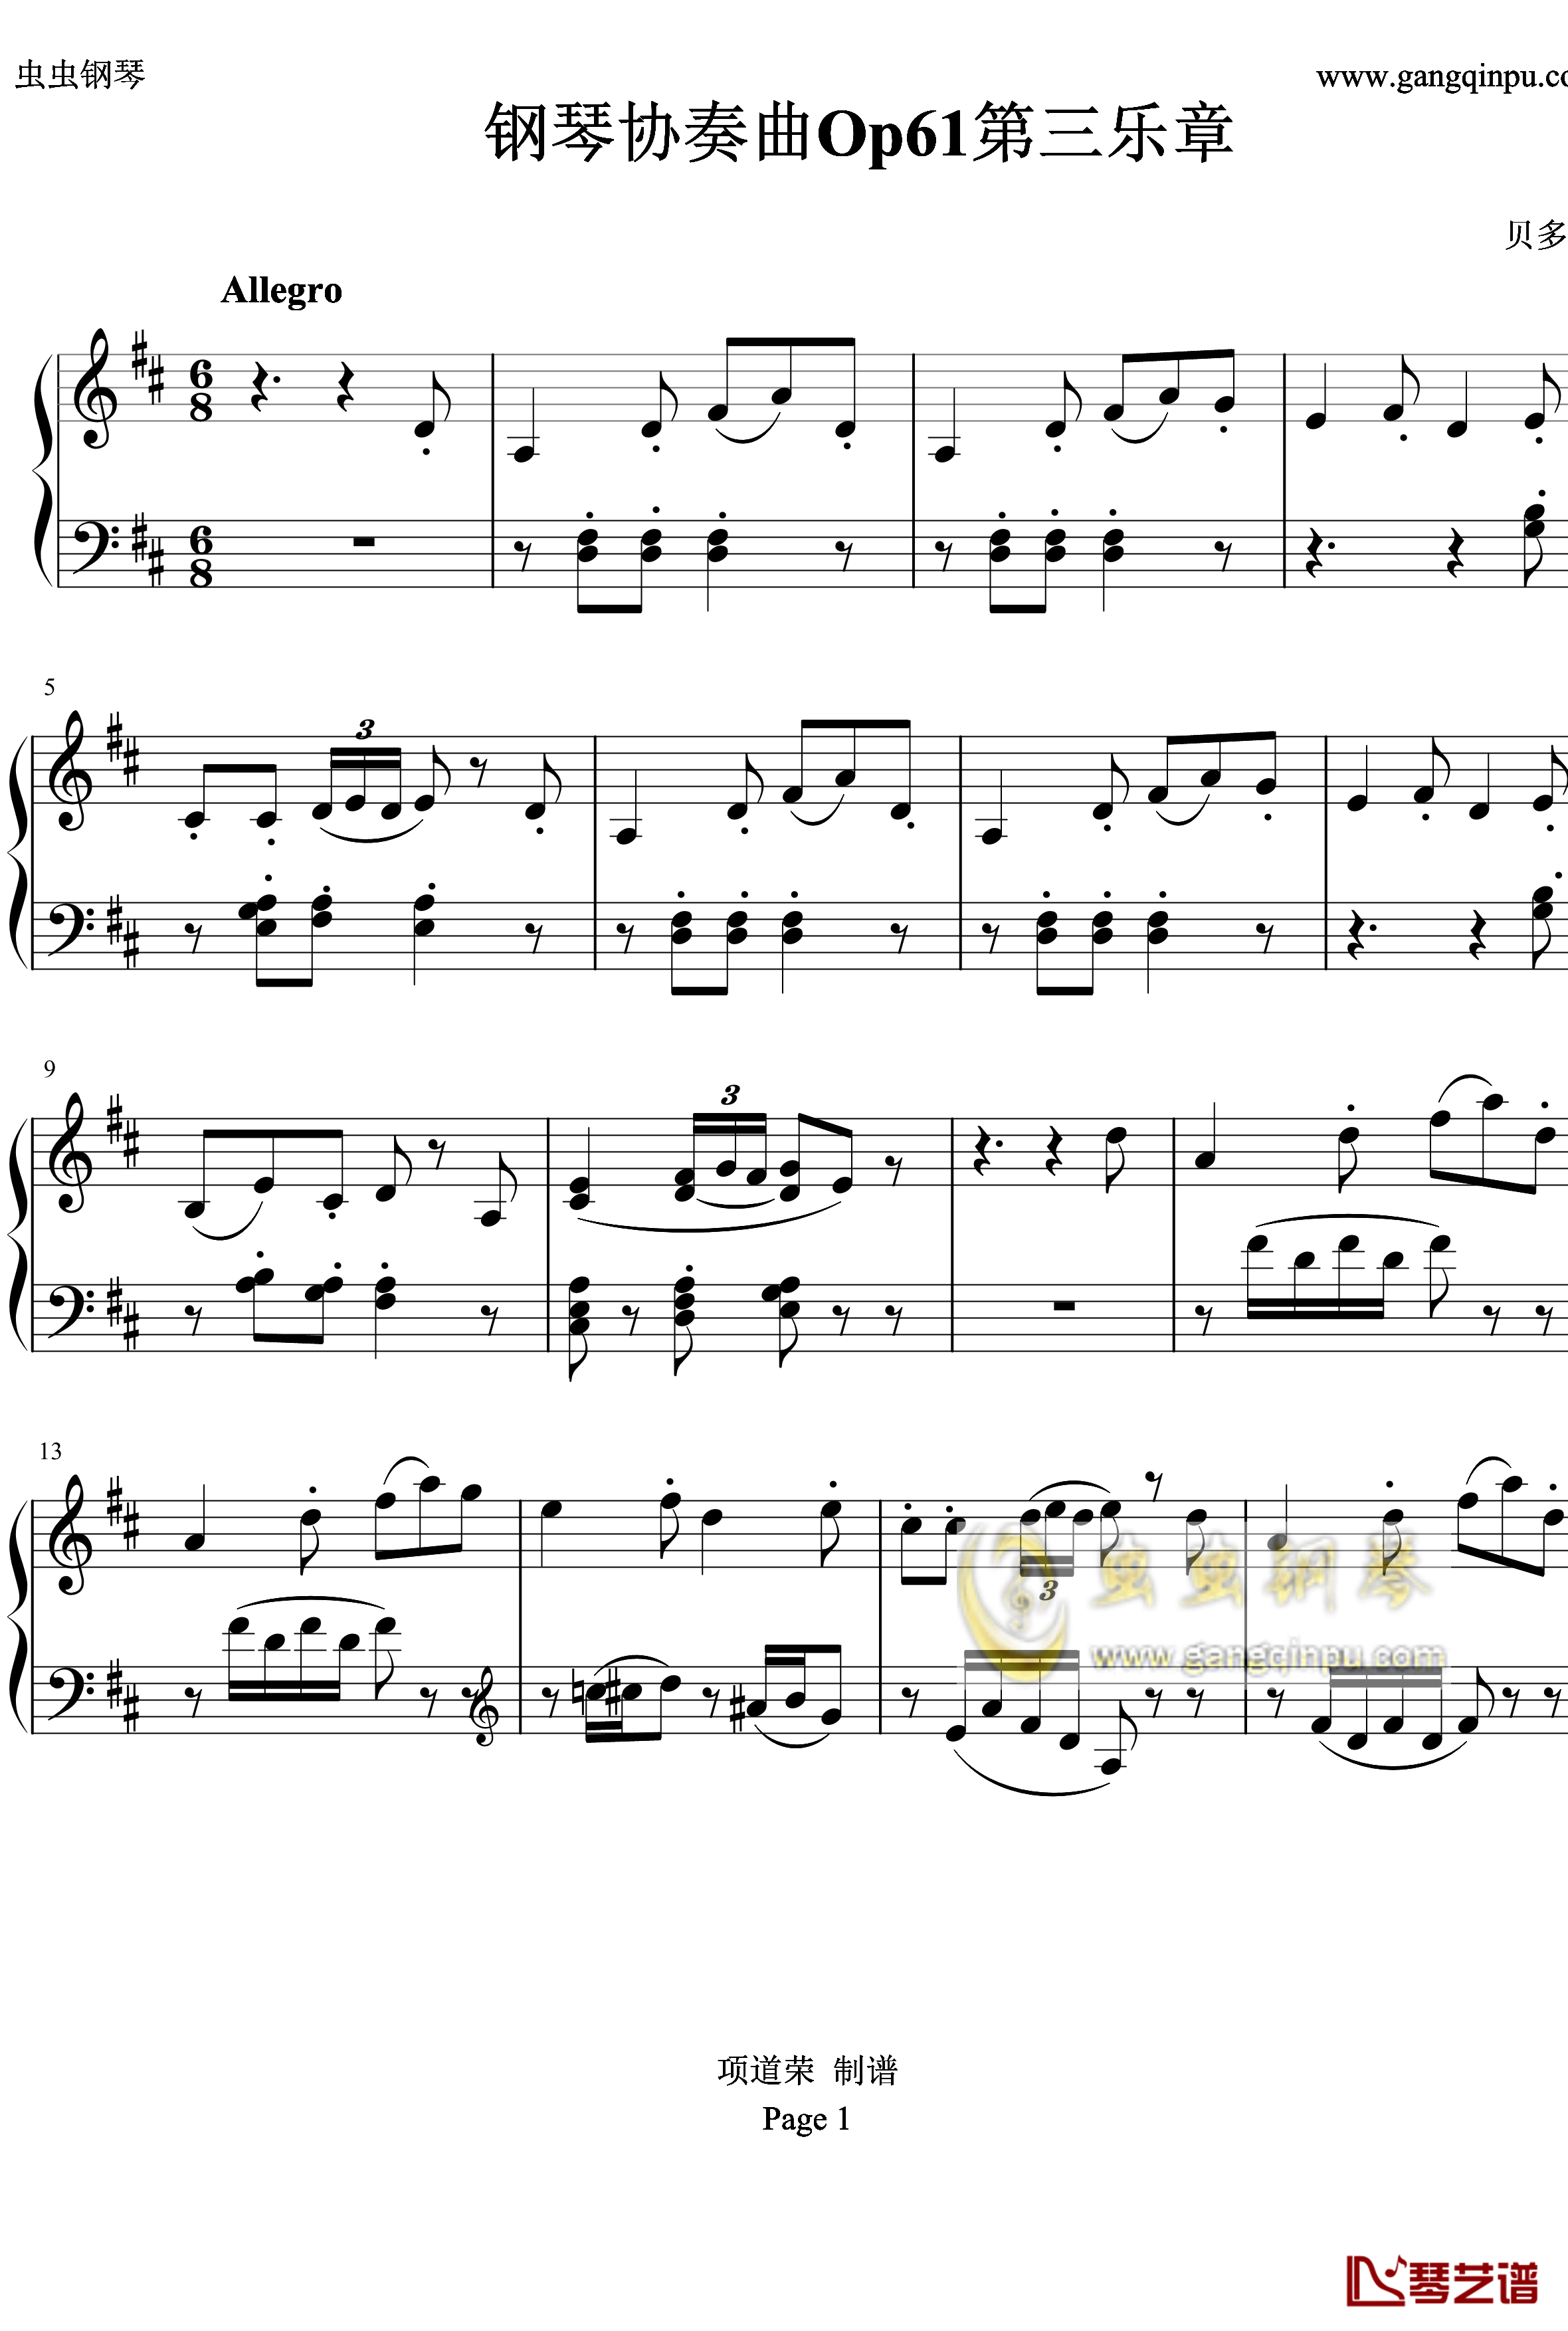 贝多芬钢琴协奏曲Op61第三乐章钢琴谱-贝多芬1